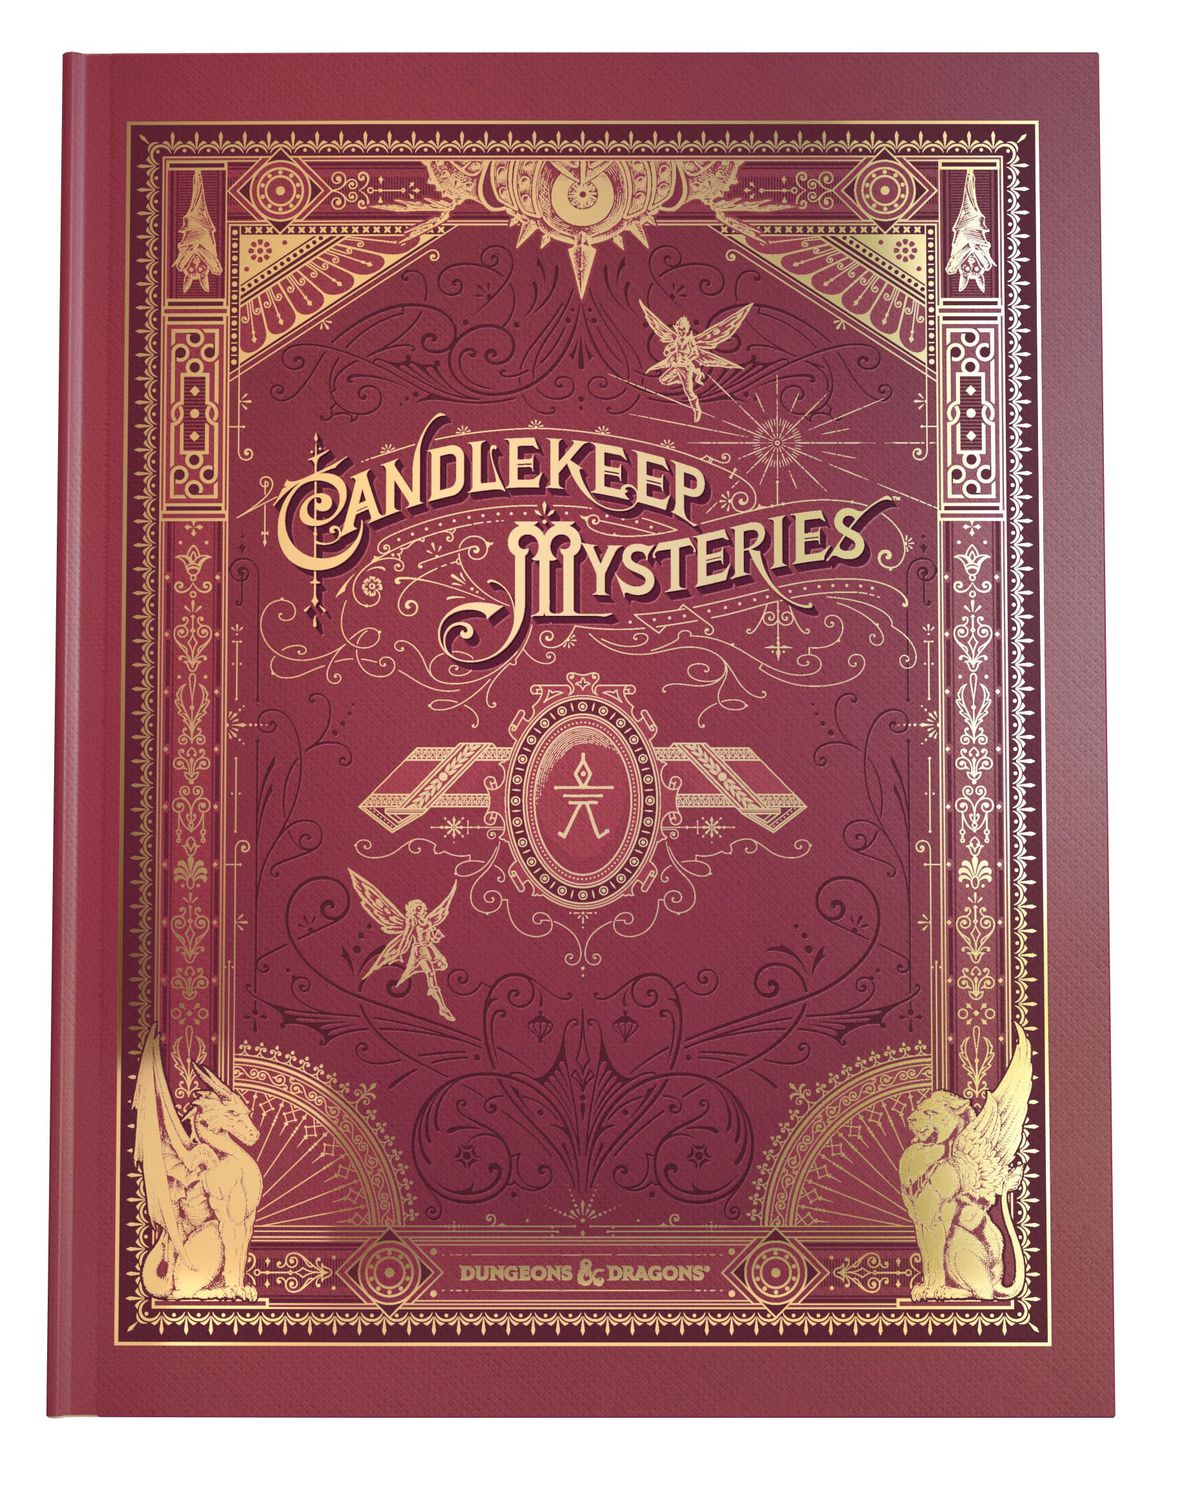 La copertina alternativa di Candlekeep Mysteries sembra un libro rilegato in pelle con accenti dorati.